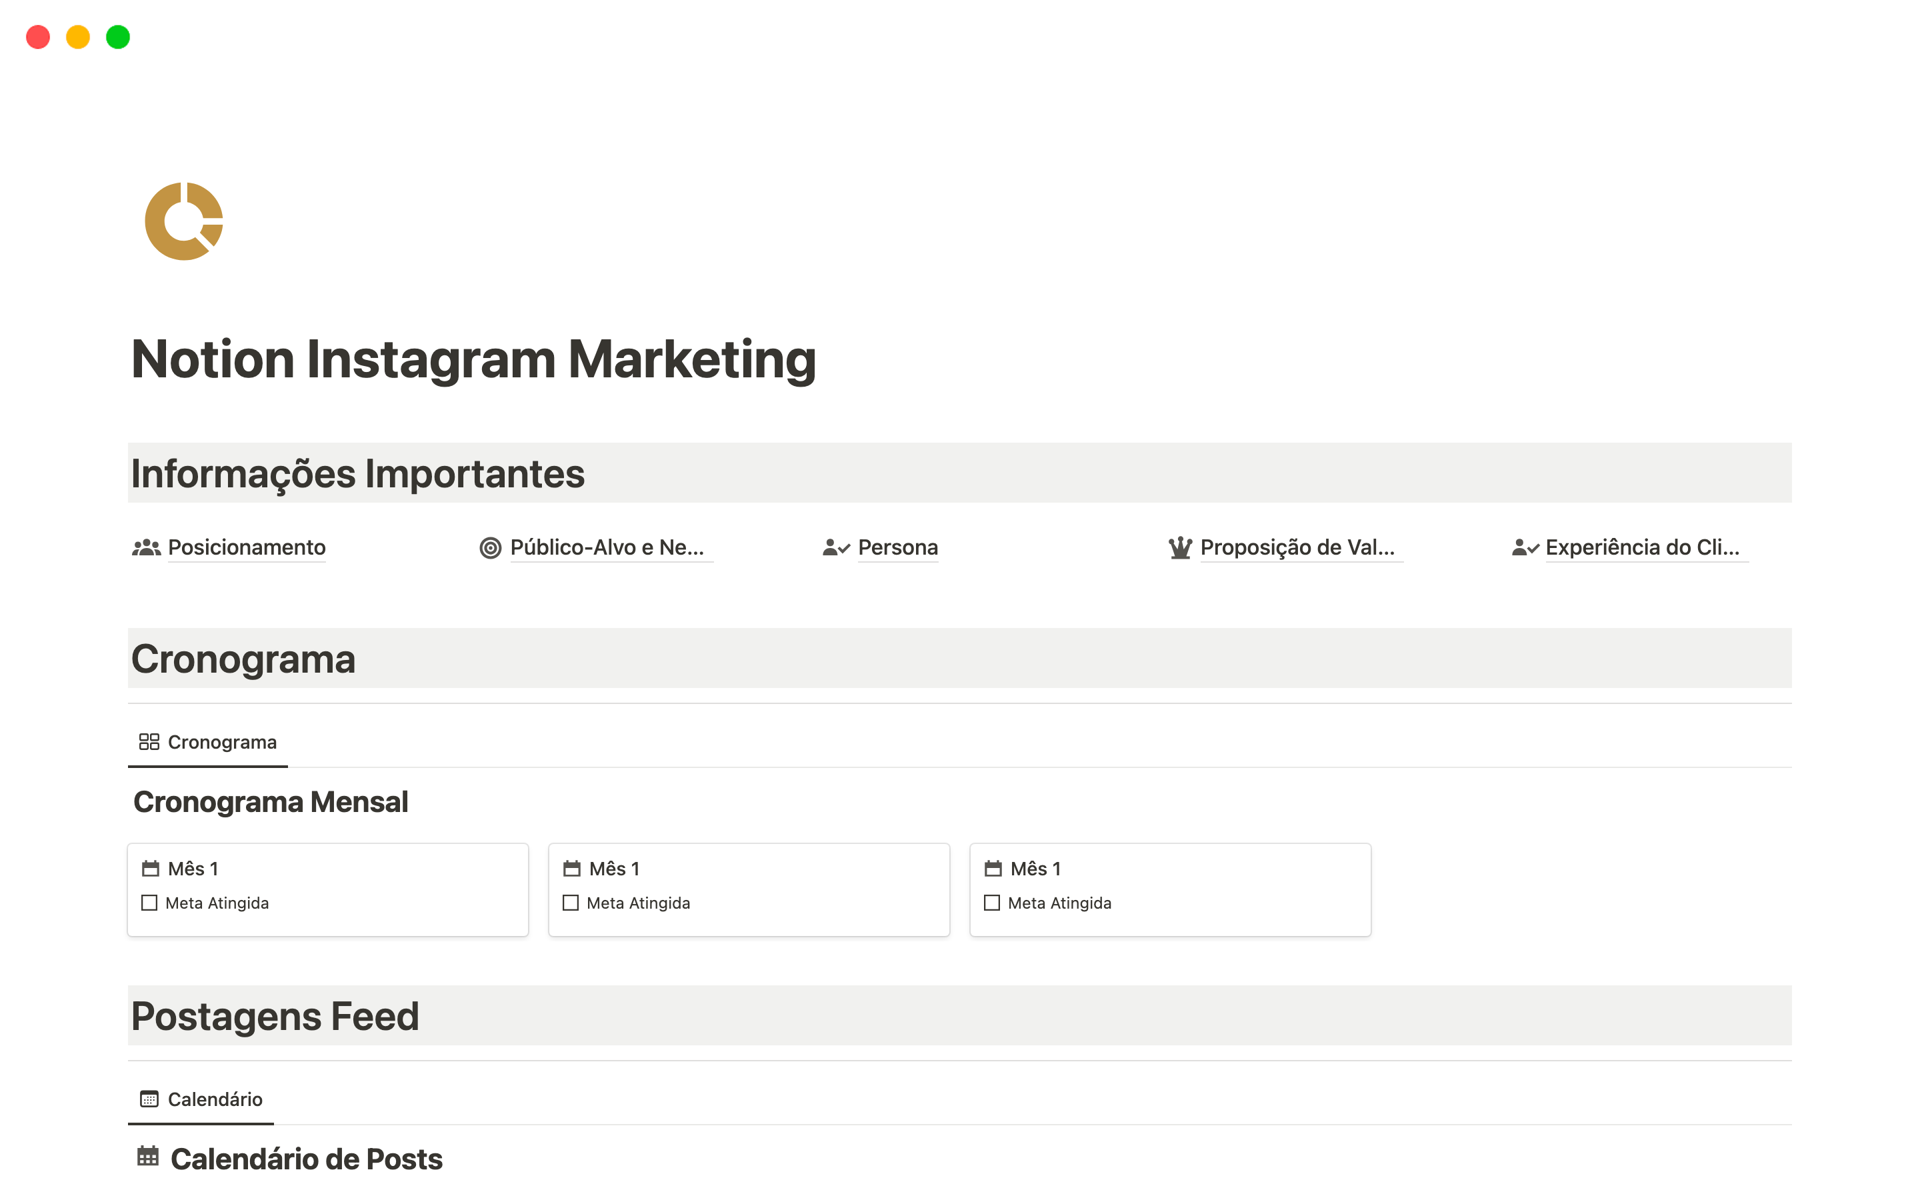 Nosso "Notion Instagram Marketing" é um modelo de planejamento estratégico de marketing digital exclusivamente desenvolvido para sua estratégia no Instagram.